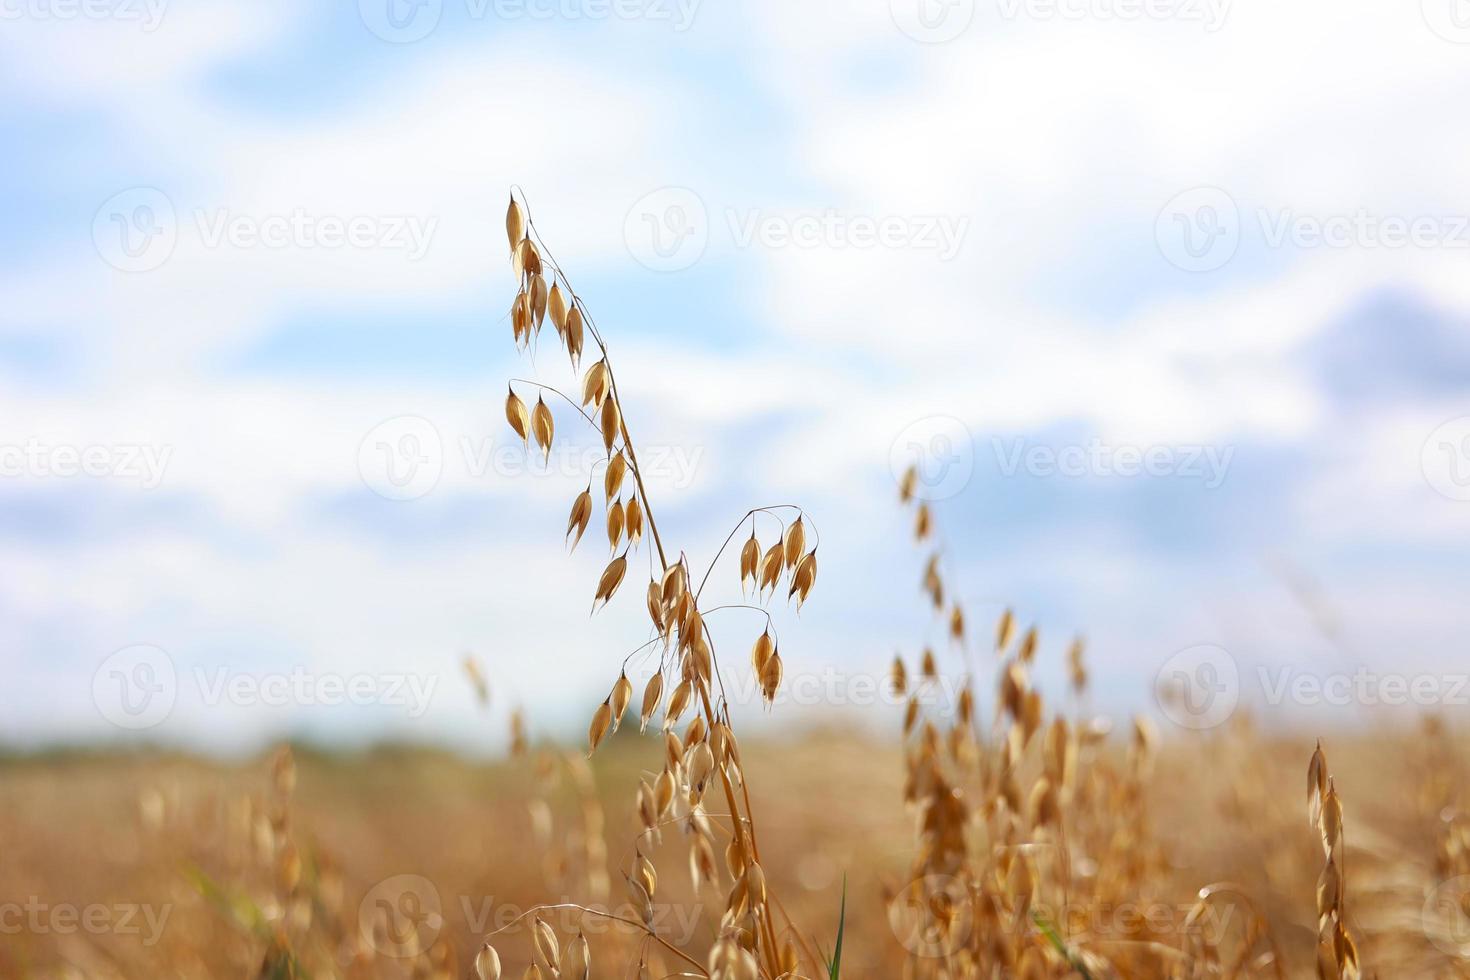 gros plan d'épis dorés mûrs de seigle, d'avoine ou de blé se balançant dans le vent léger sur fond de ciel dans le champ. la notion d'agriculture. le champ de blé est prêt pour la récolte. la crise alimentaire mondiale. photo